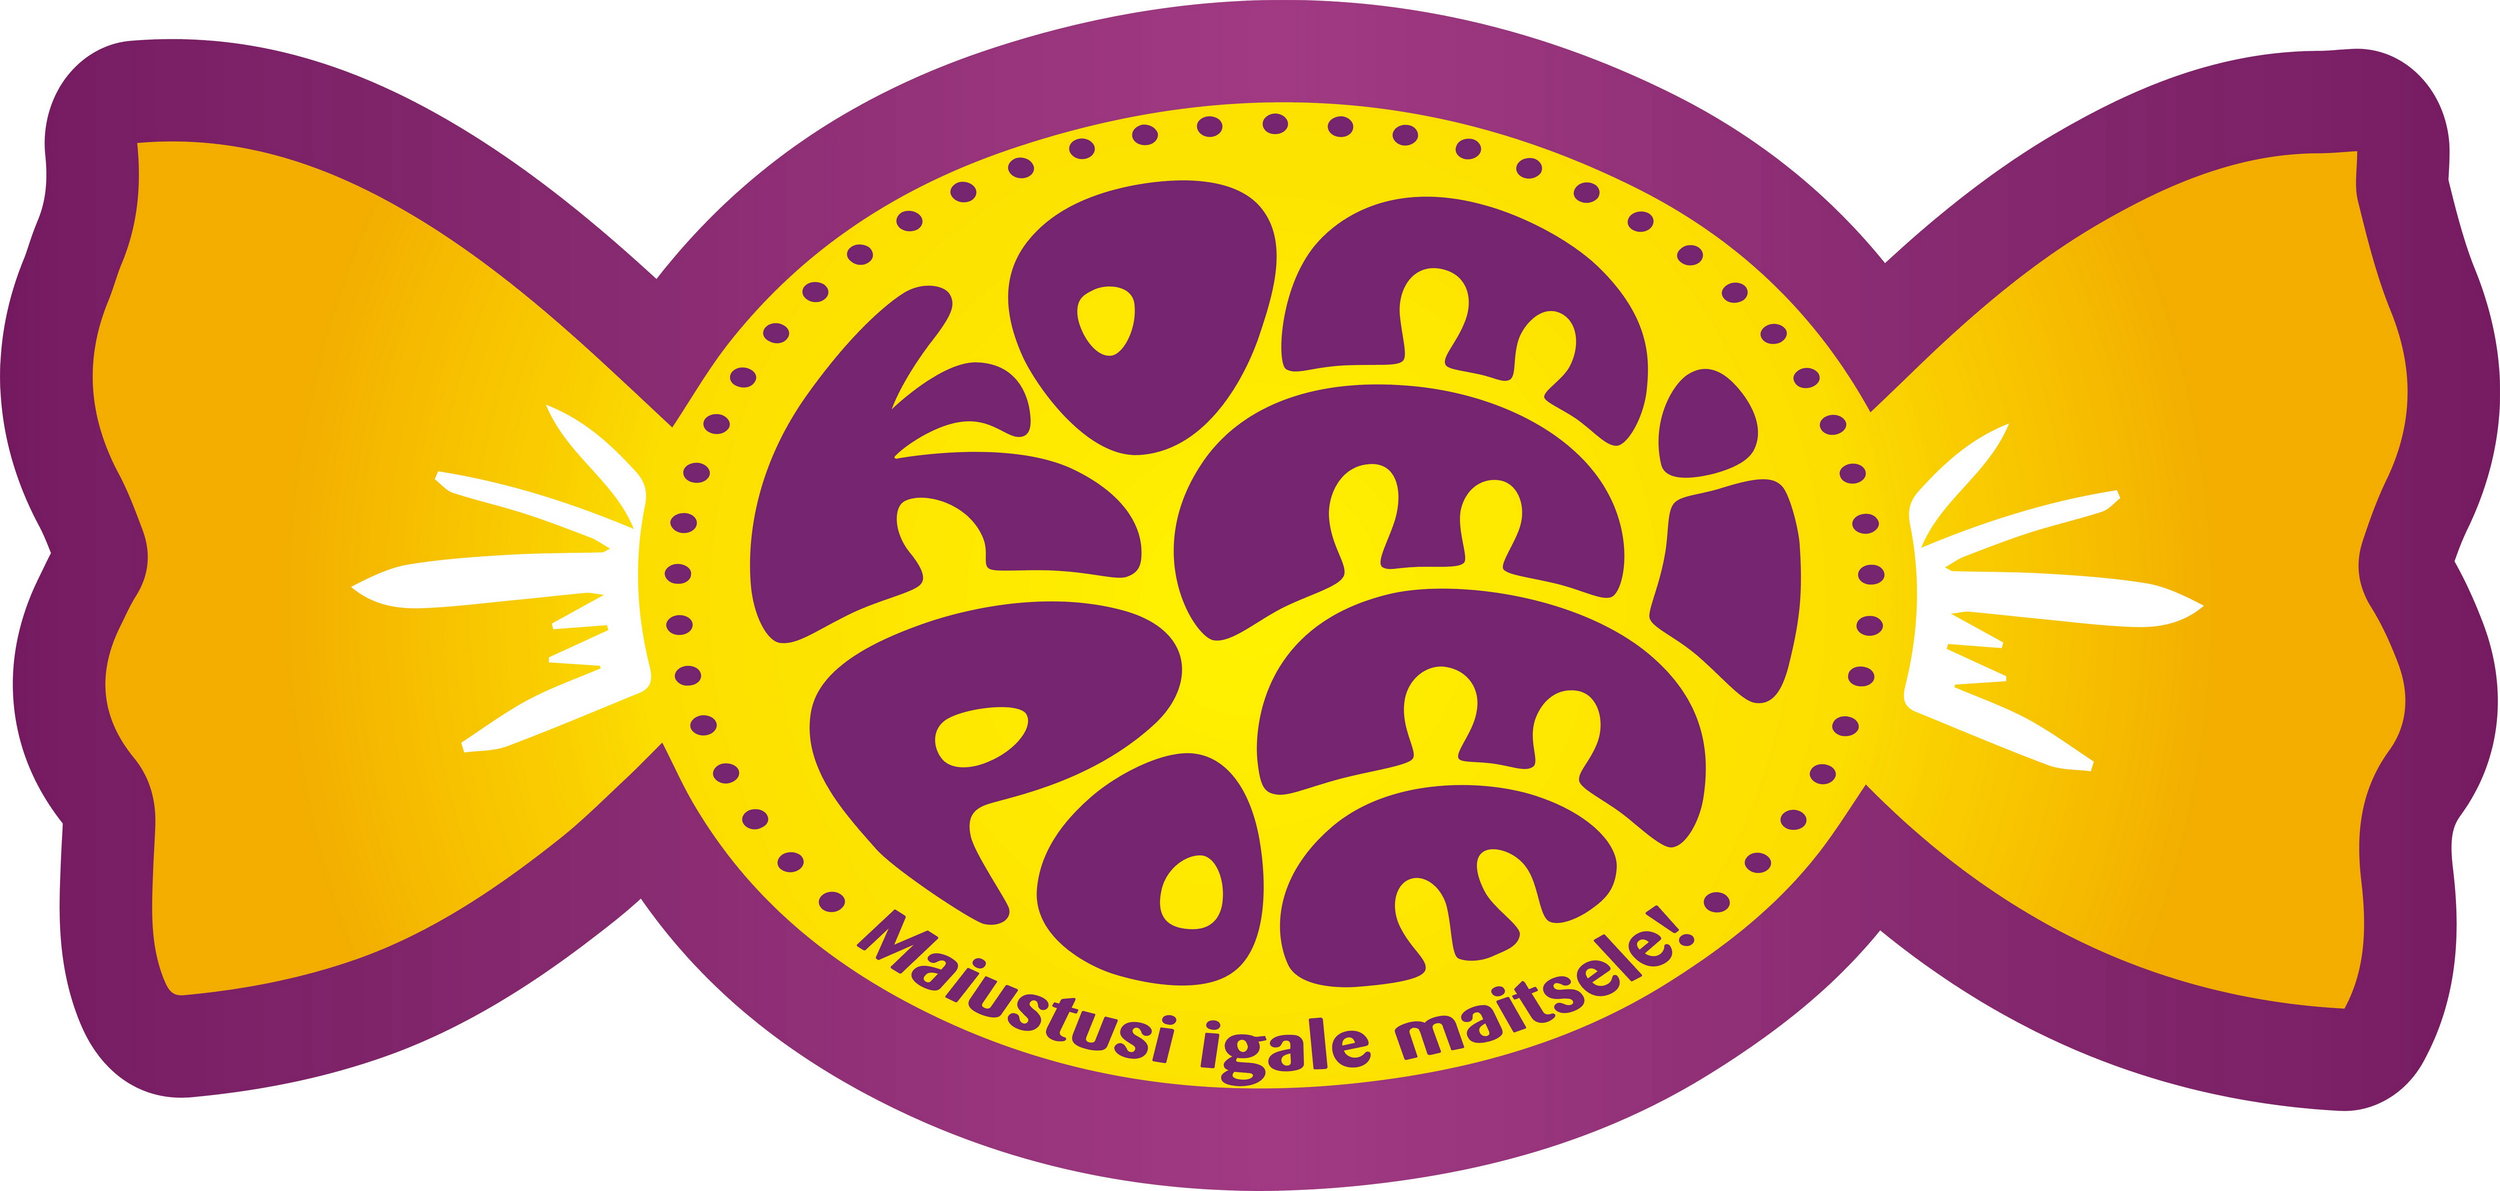 Kommipomm_uus_logo_2015 jpg.jpg